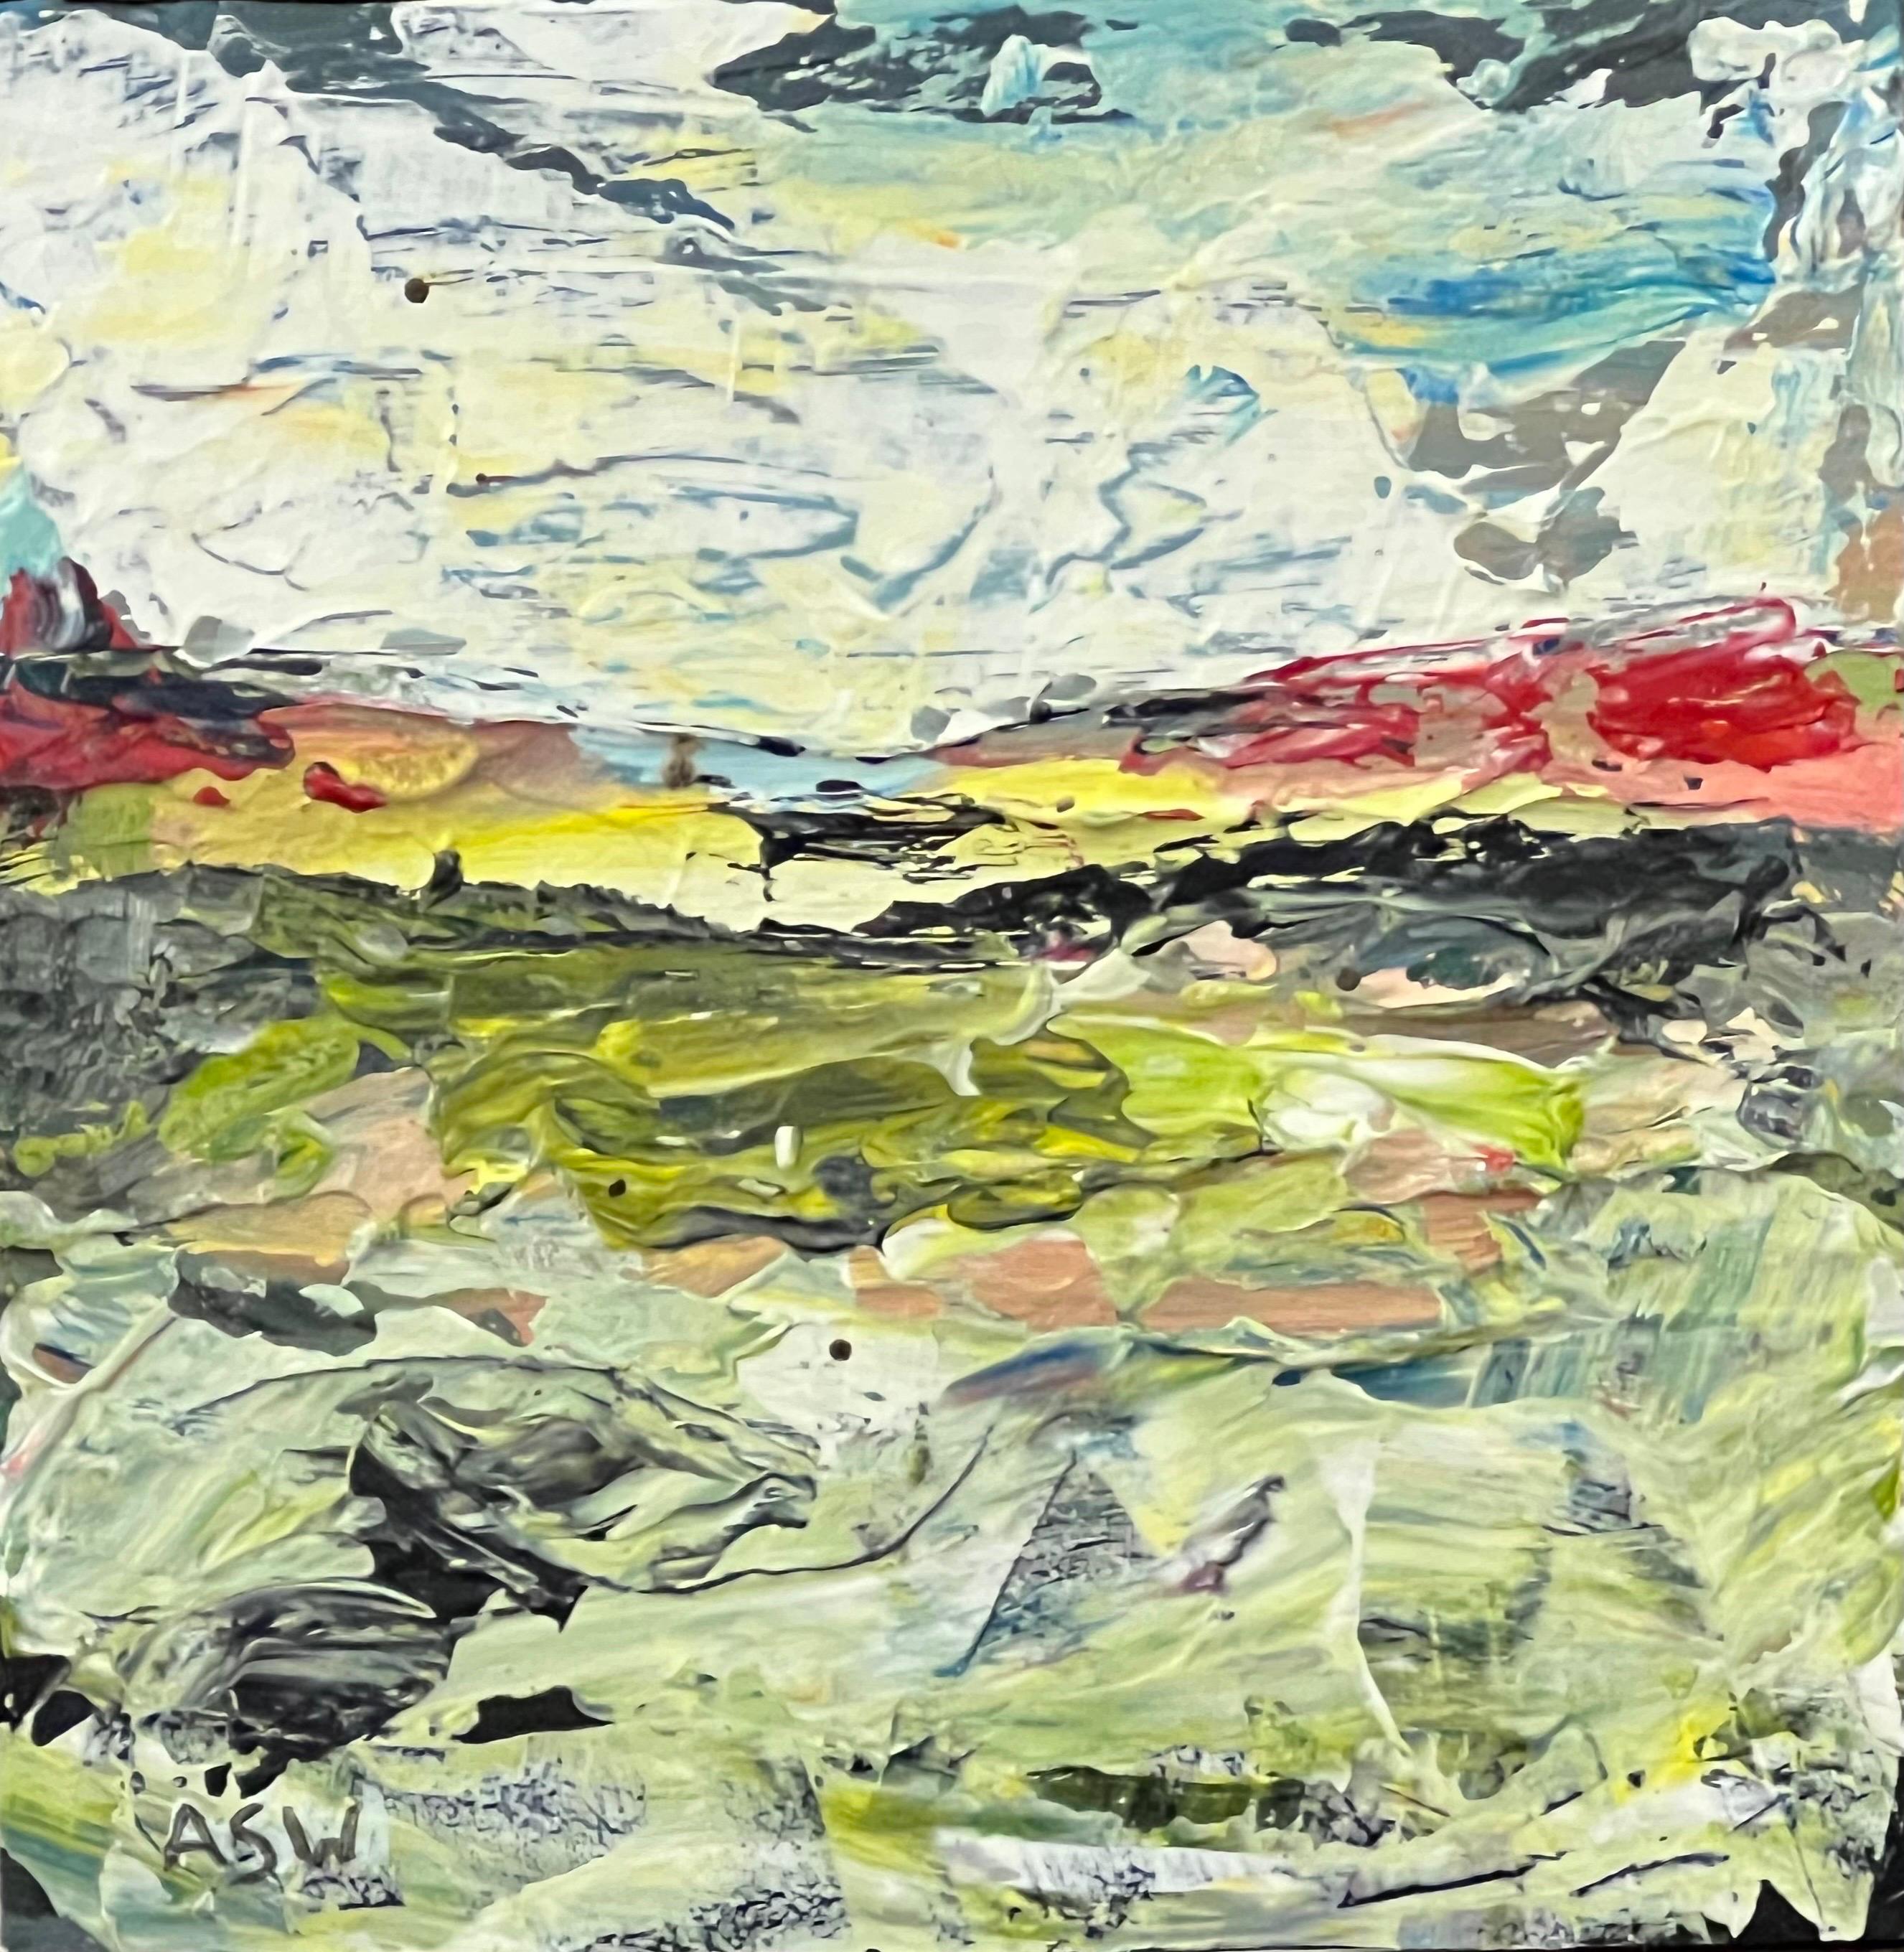 Impasto Abstrakte Seelandschaft Landschaft Miniaturstudie der britischen Künstlerin Angela Wakefield

Kunst misst 5 x 5 Zoll
Rahmen misst 11 x 11 Zoll 

Eingerahmt in einem hochwertigen, schwarzen Leisten 

Angela Wakefield war zweimal auf dem